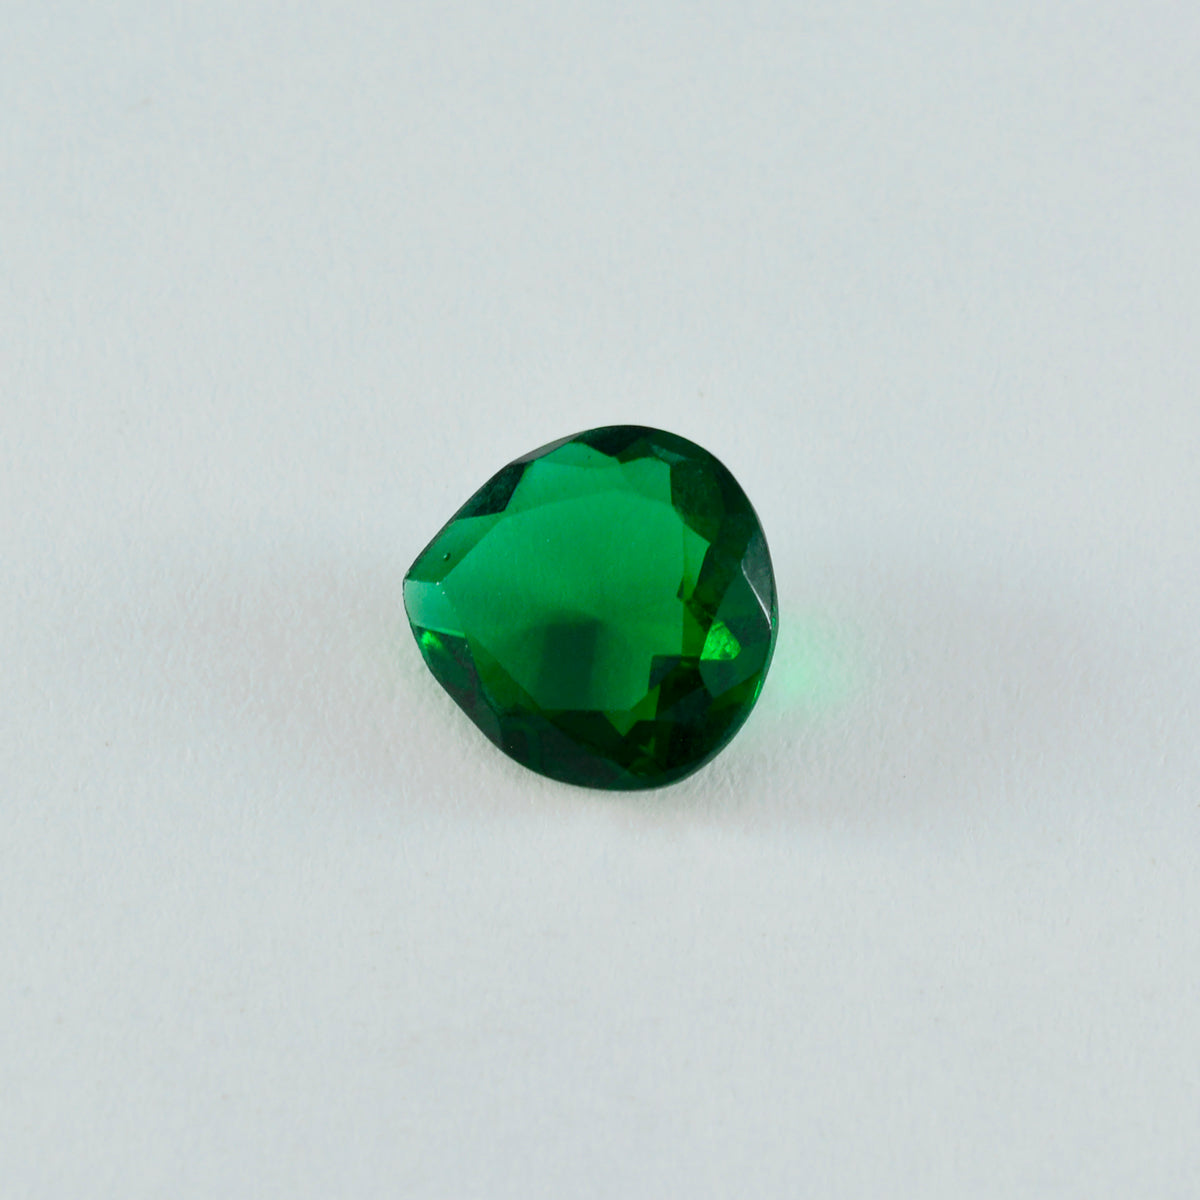 riyogems 1 шт., зеленый изумруд, граненый камень 12x12 мм, в форме сердца, прекрасное качество, свободный камень